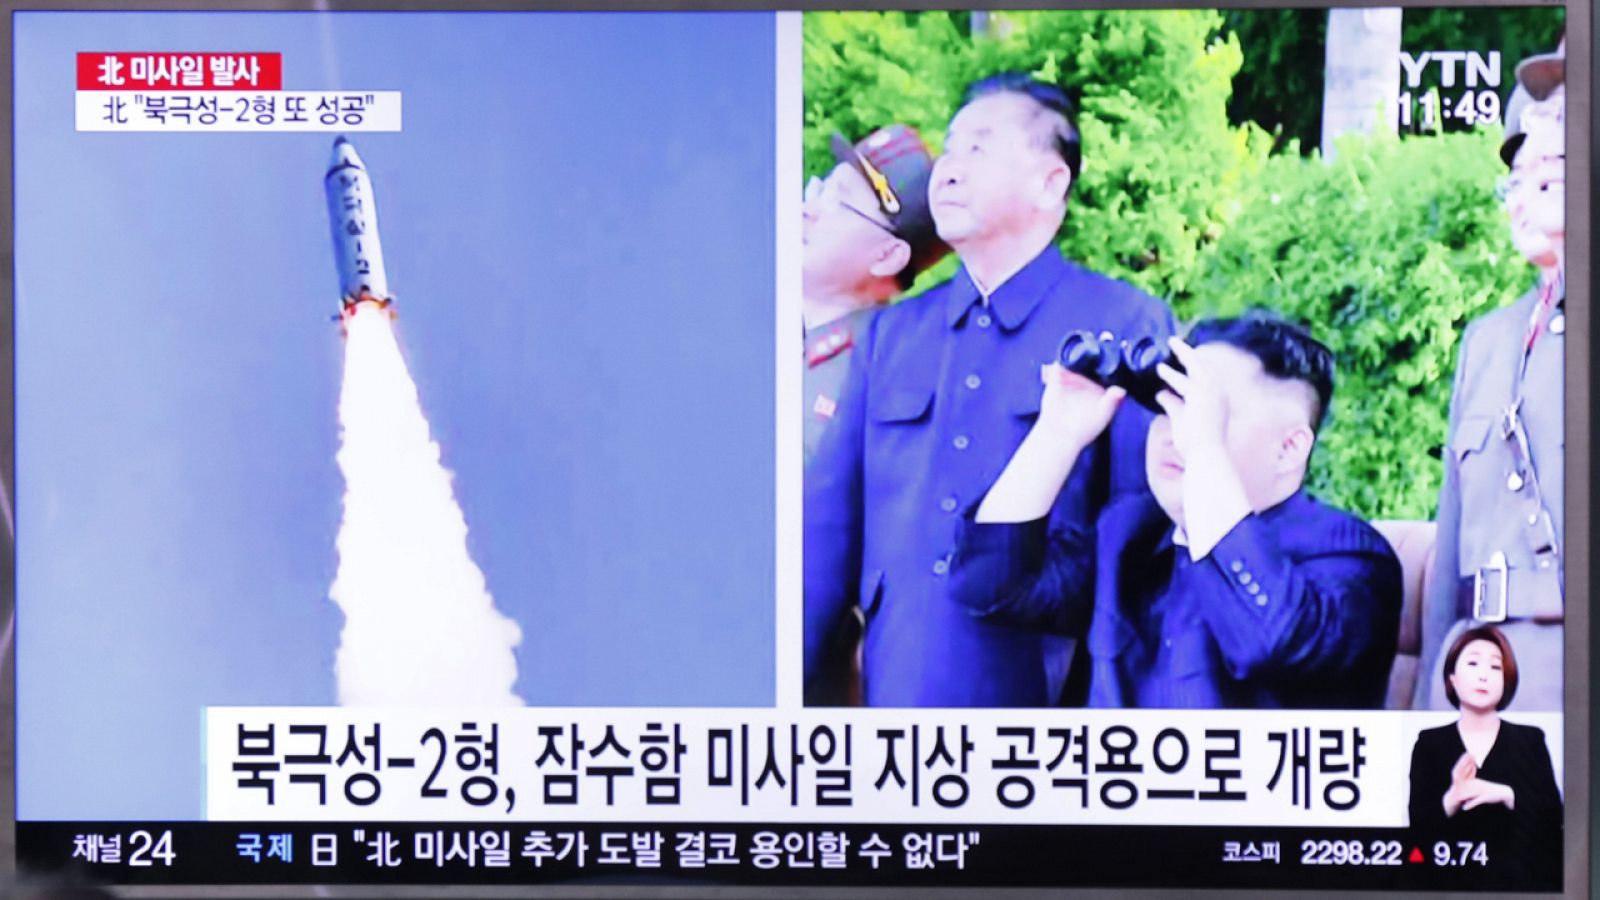 Imagen de la televisión surcoreana que muestra el último lanzamiento de un misil norocoreano